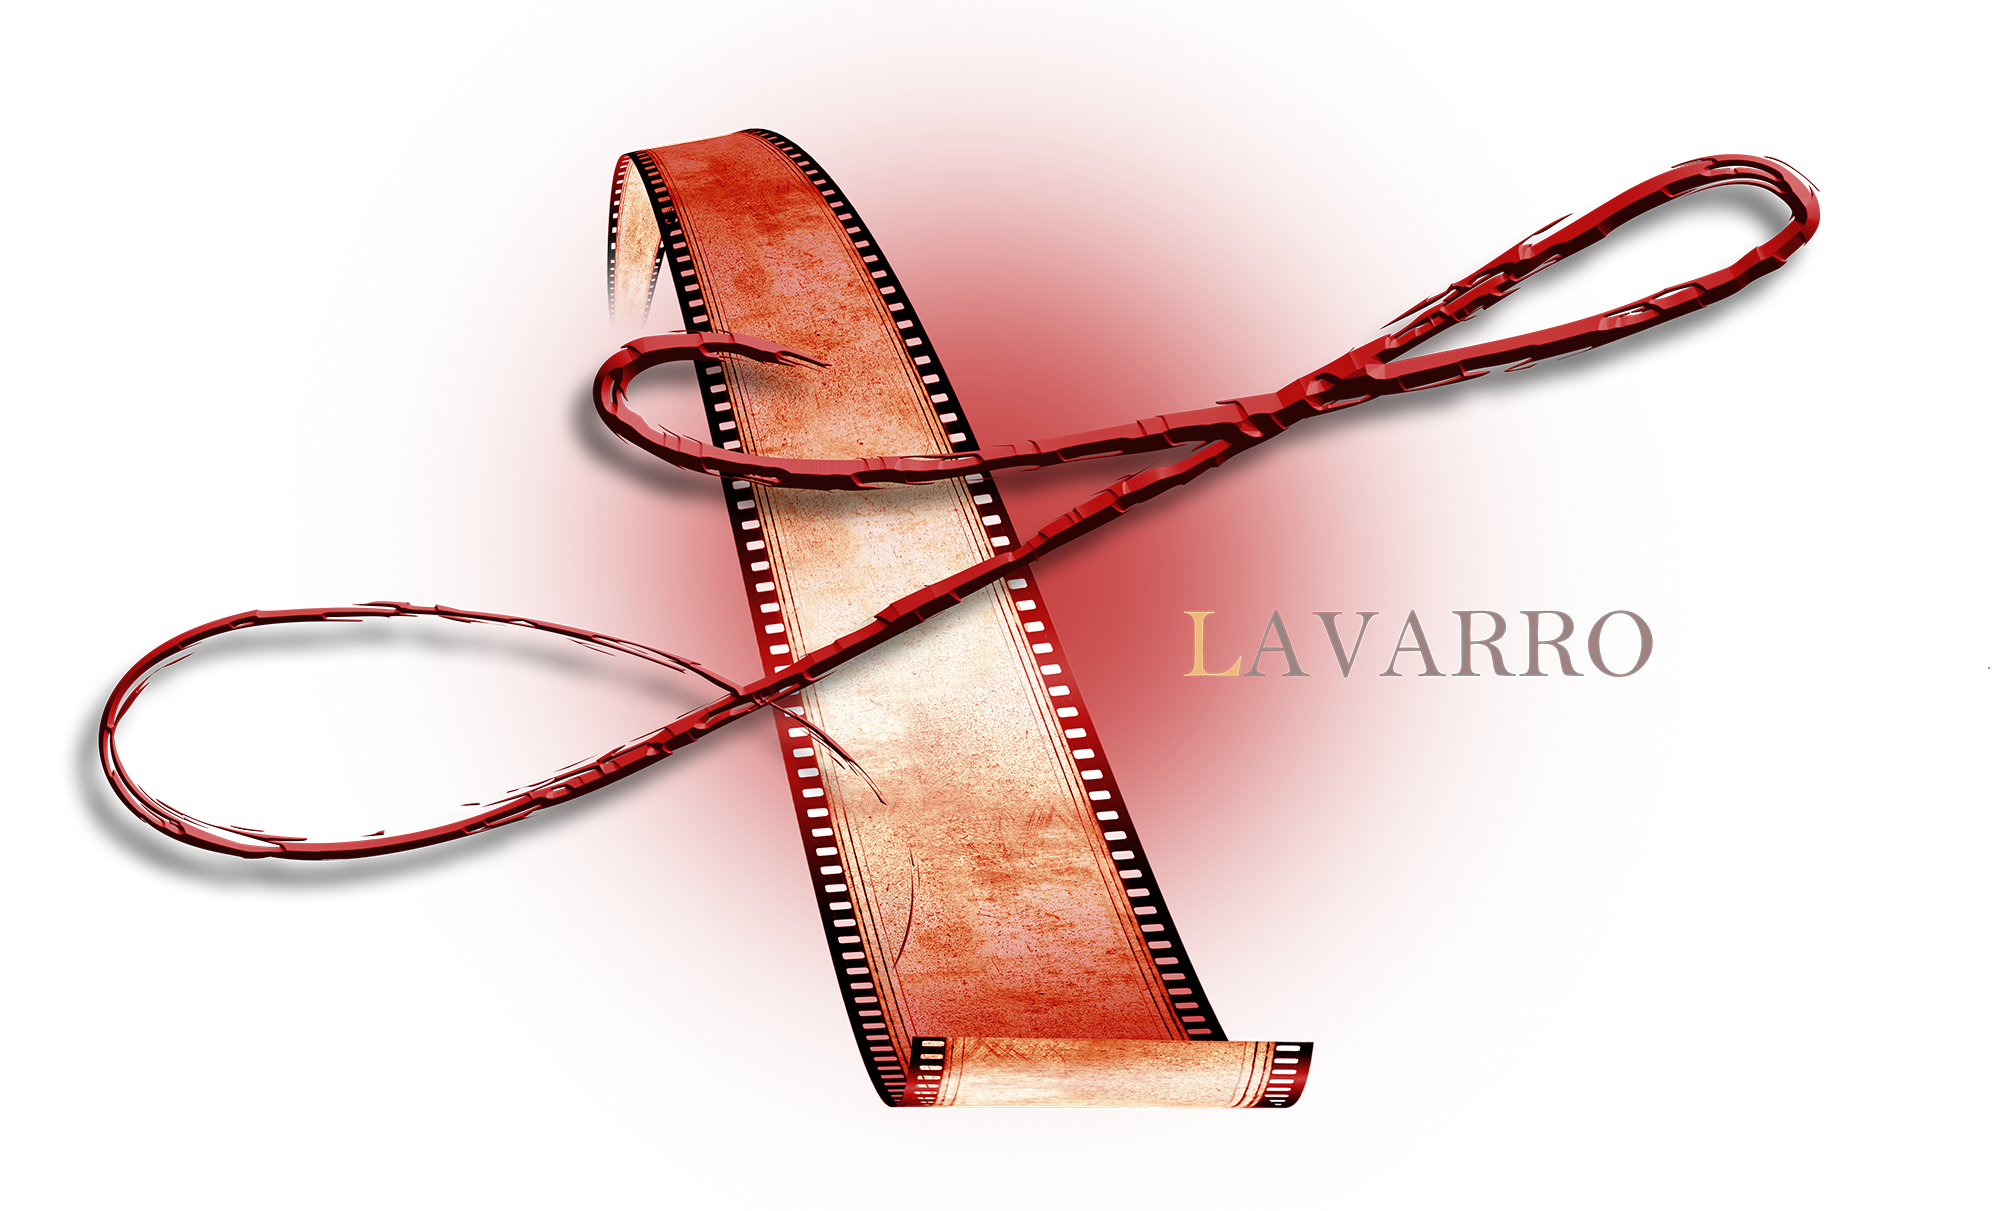 LaVarro